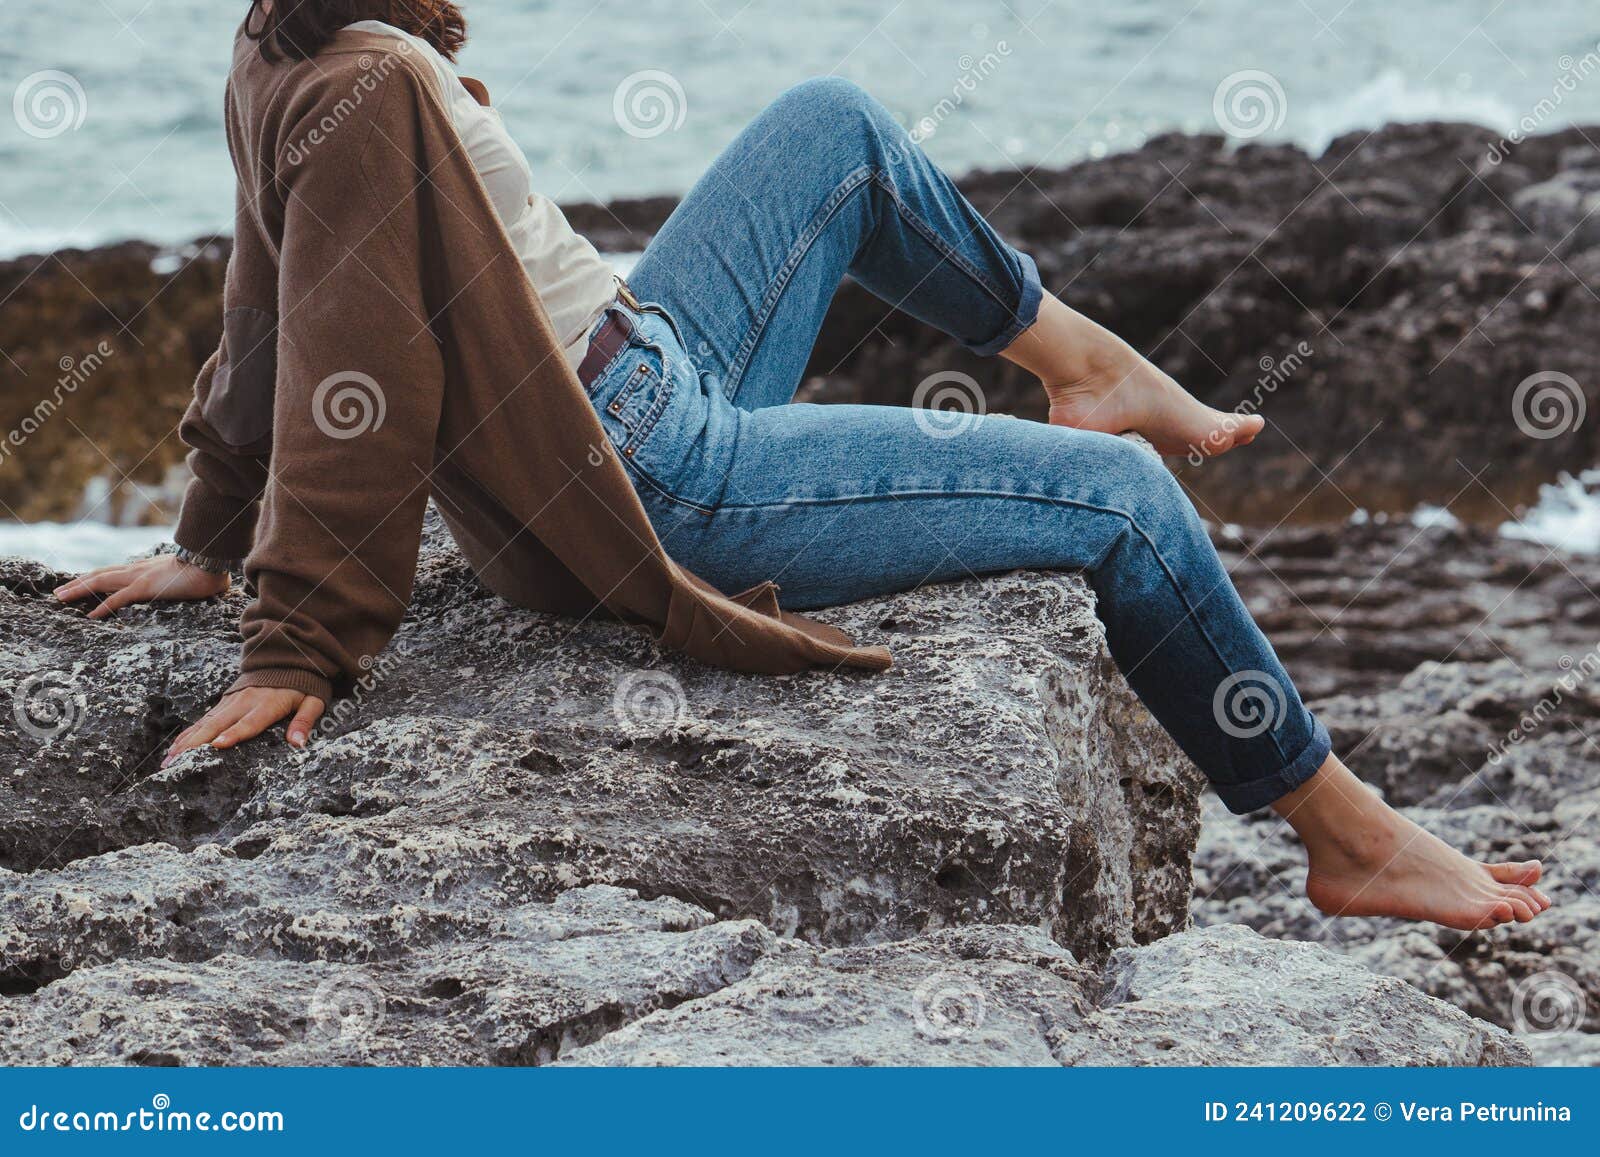 amanda calman recommends wet jeans beach pic